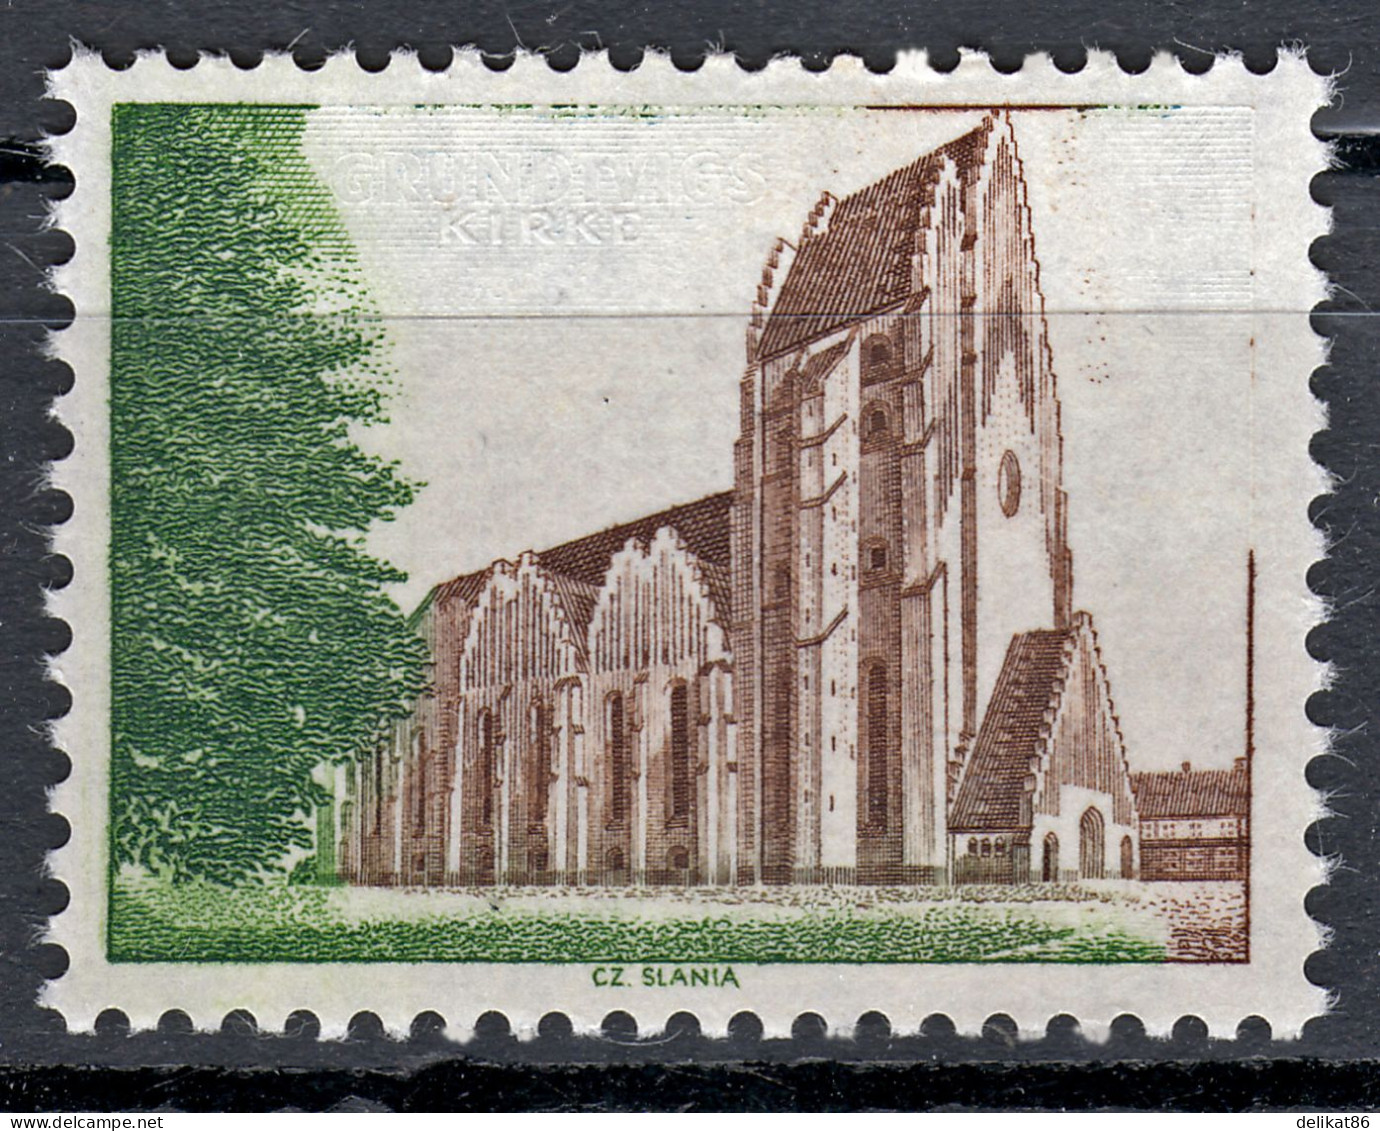 Probedruck Test Stamp Specimen Prøve Grundtvig Kirke Slania 1968 - Ensayos & Reimpresiones